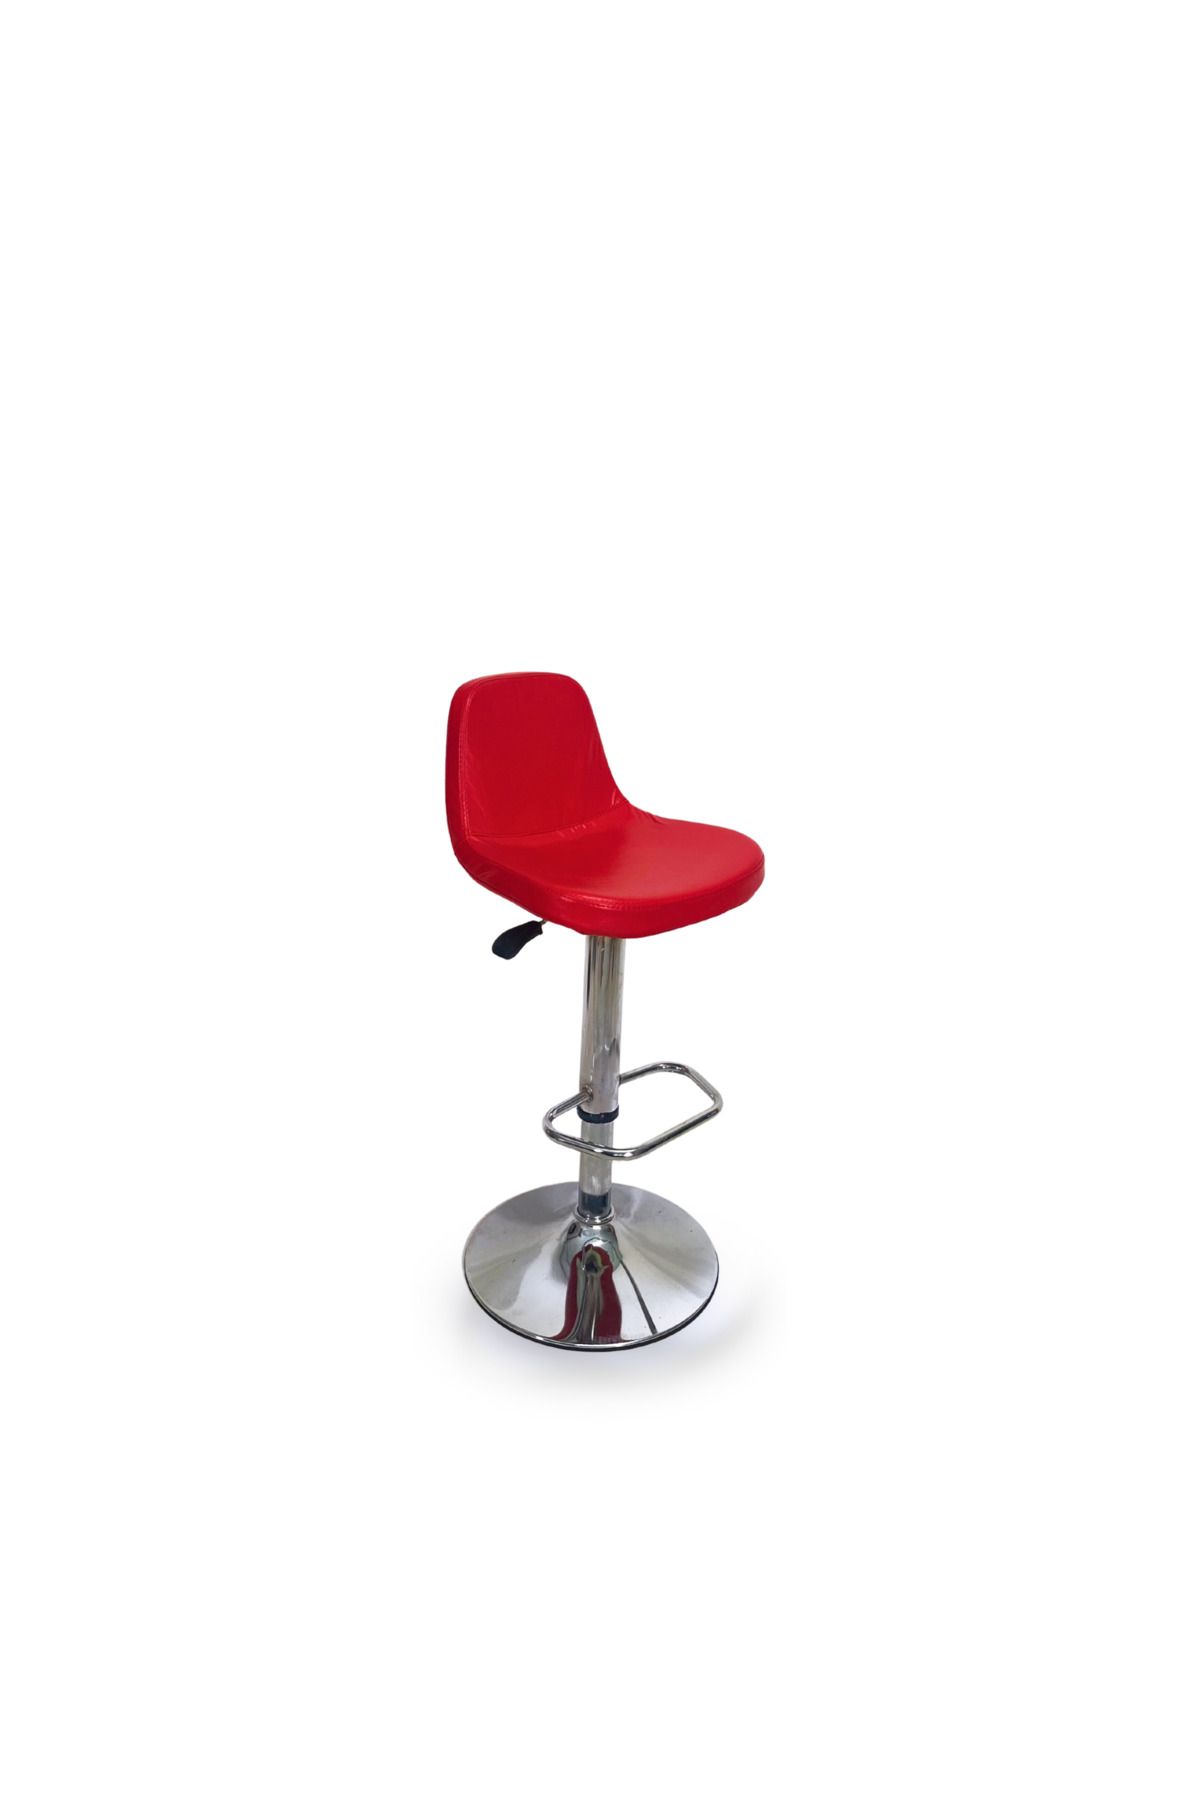 BİLGİ BÜRO MOBİLYALARI Cindy Bar Sandalyesi Mutfak Sandalyesi Ayarlanabilir Bar Taburesi Koltuk Kırmızı